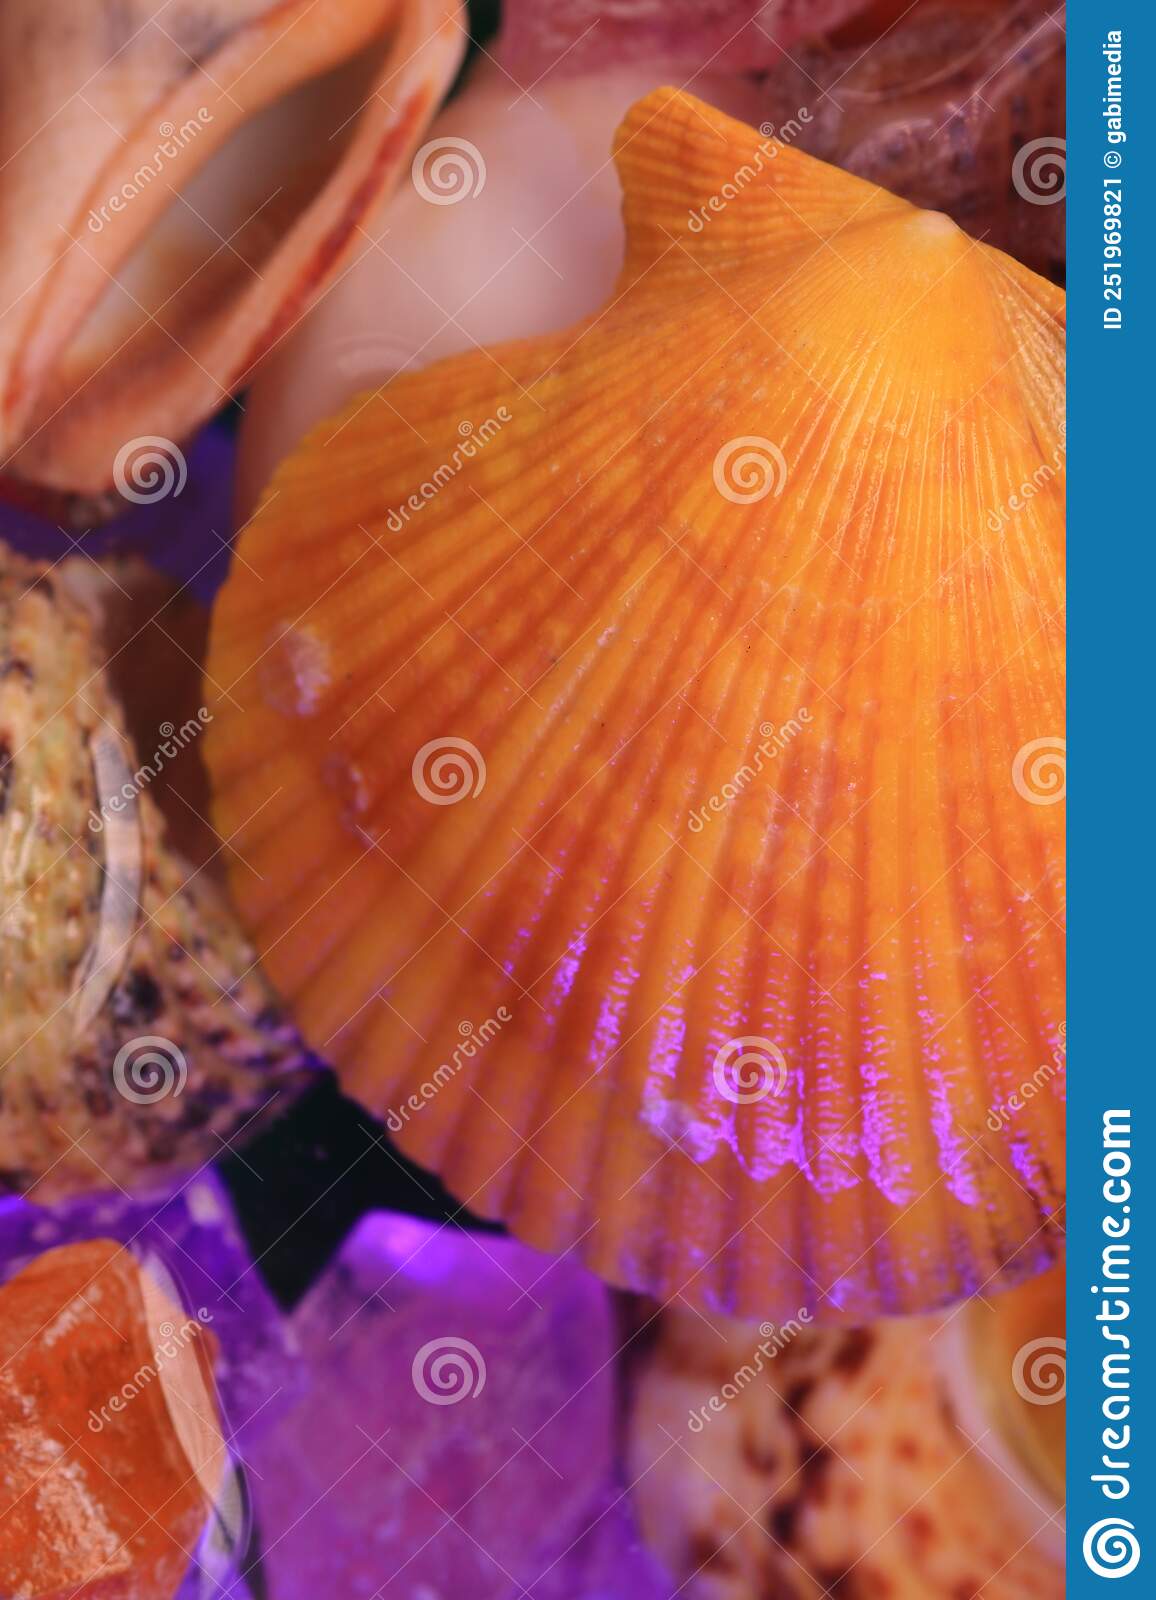 Shells in the aquarium, top view